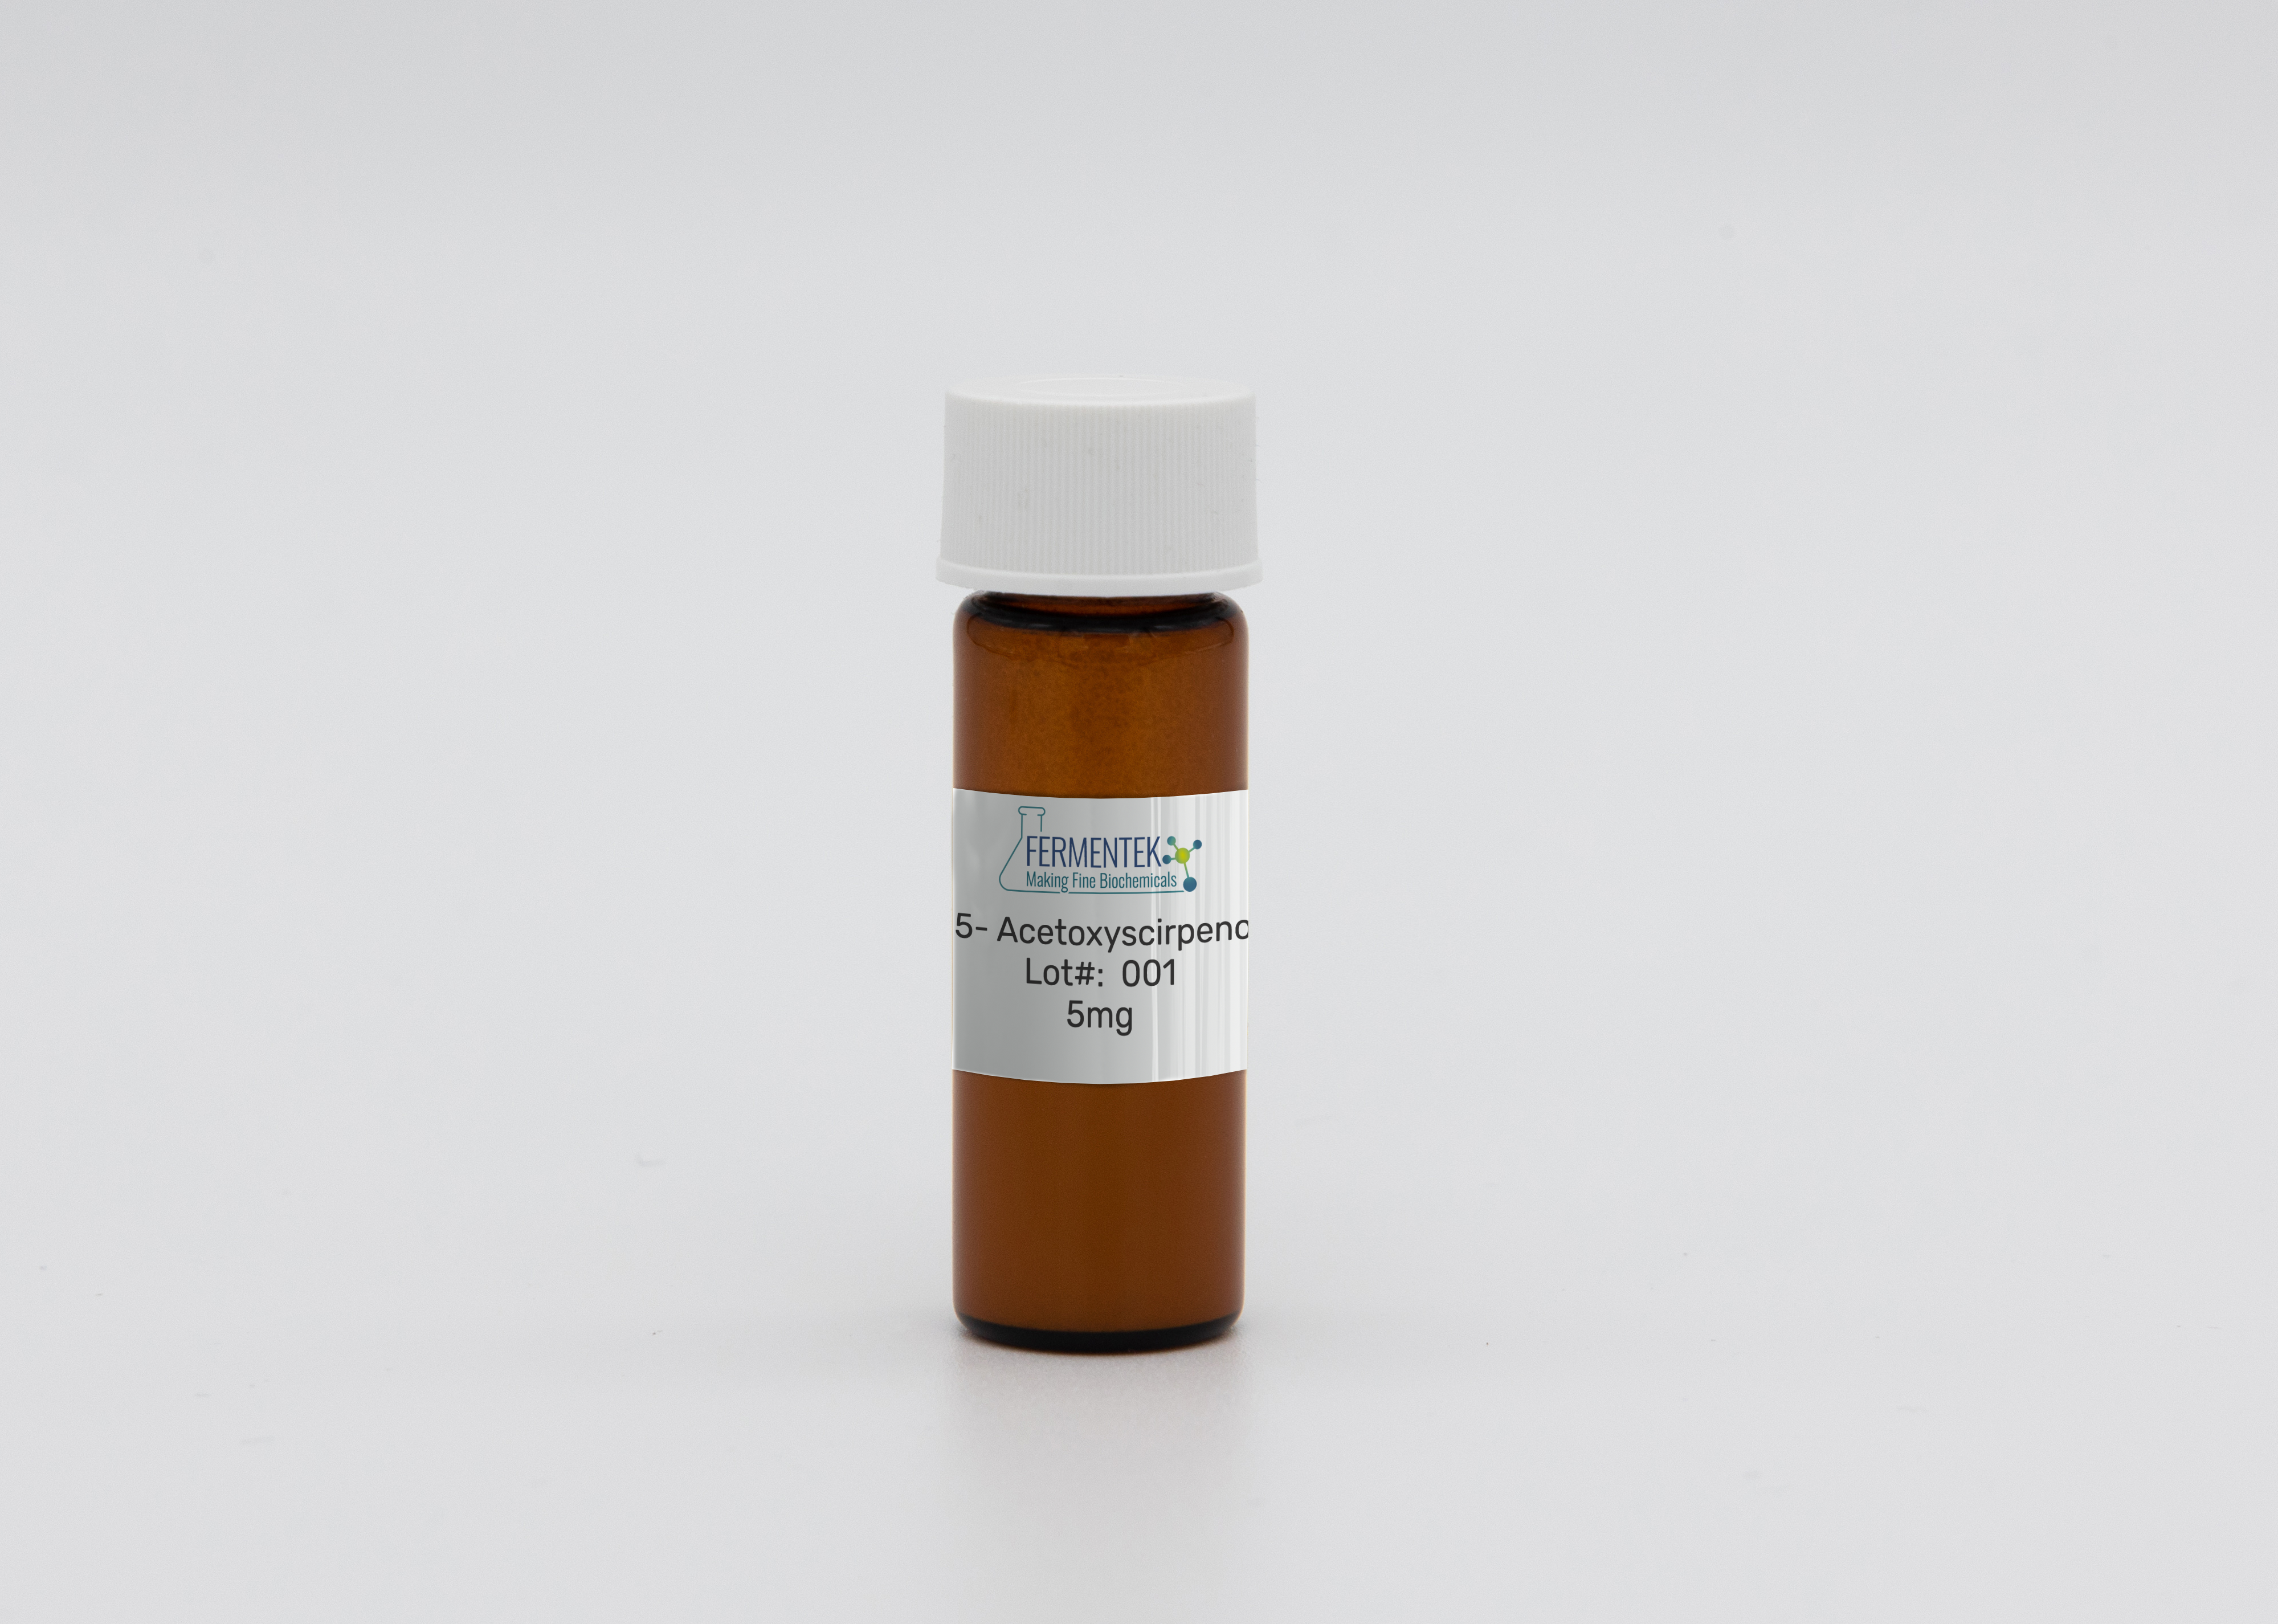 15- Acetoxyscirpenol bottle